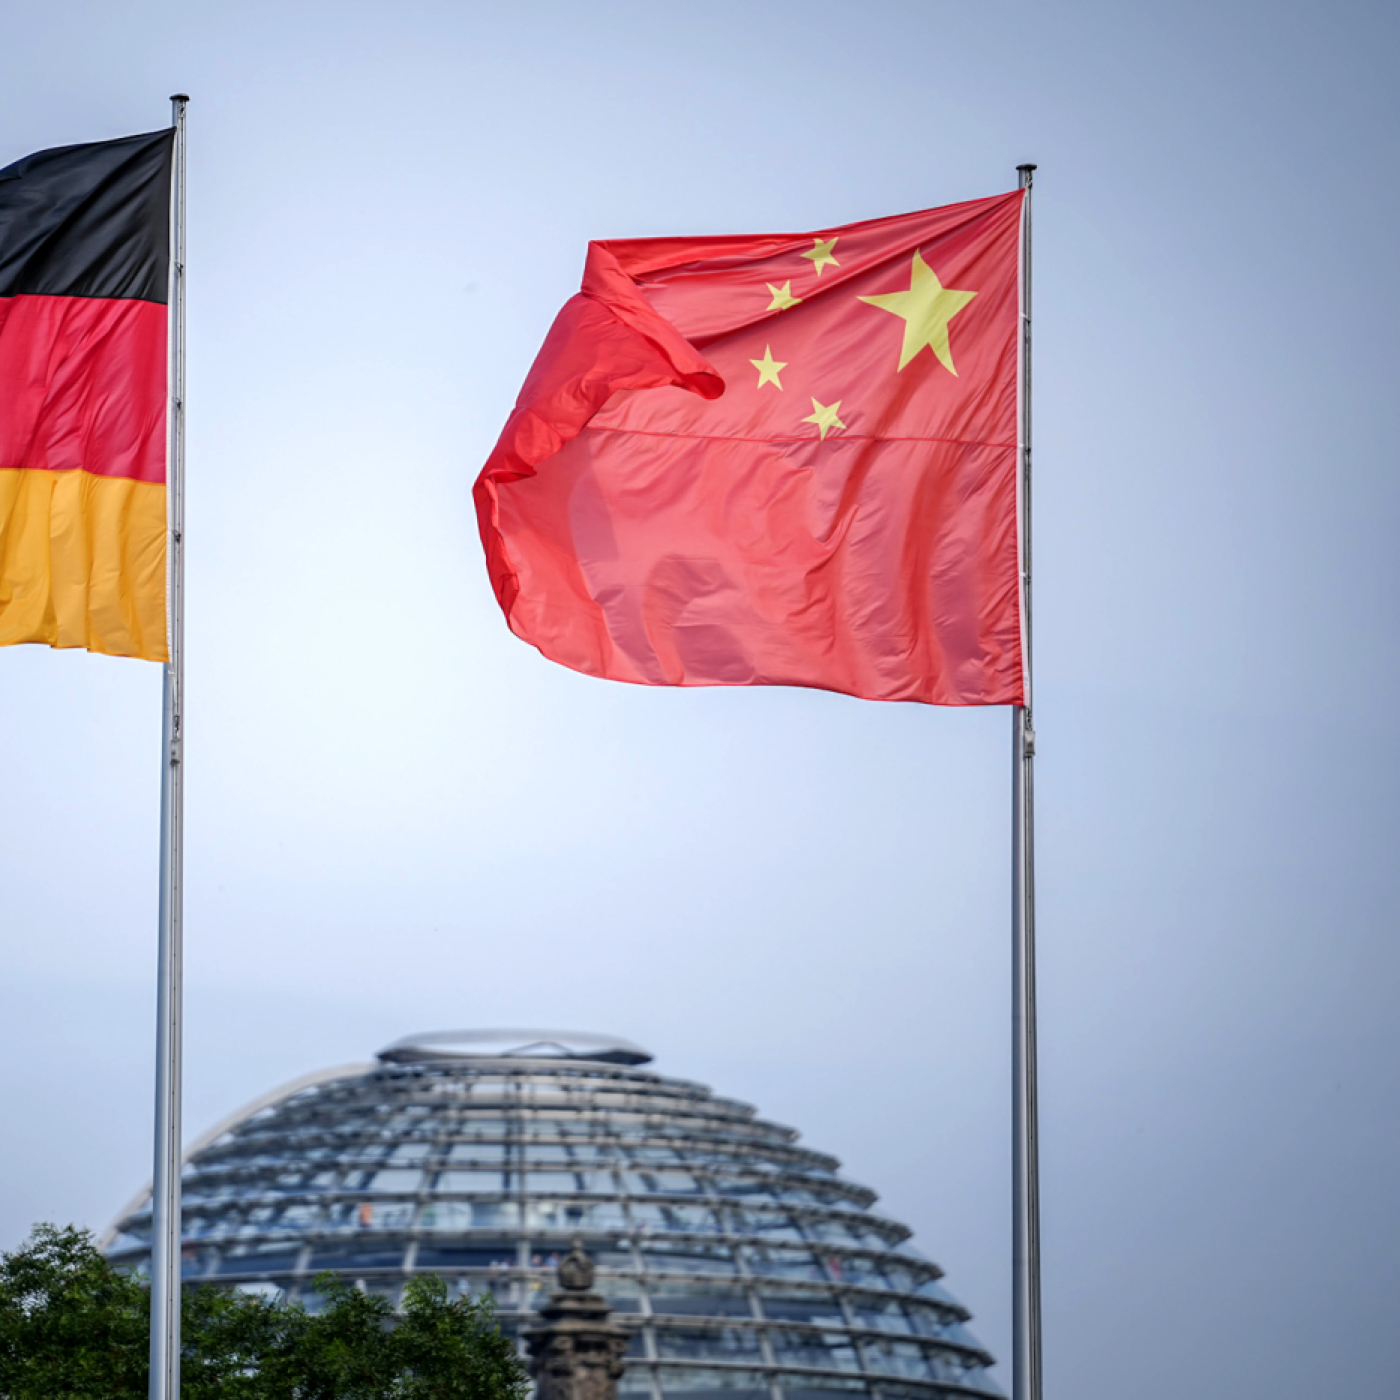 drei deutsche wegen mutmaßlicher china-spionage festgenommen